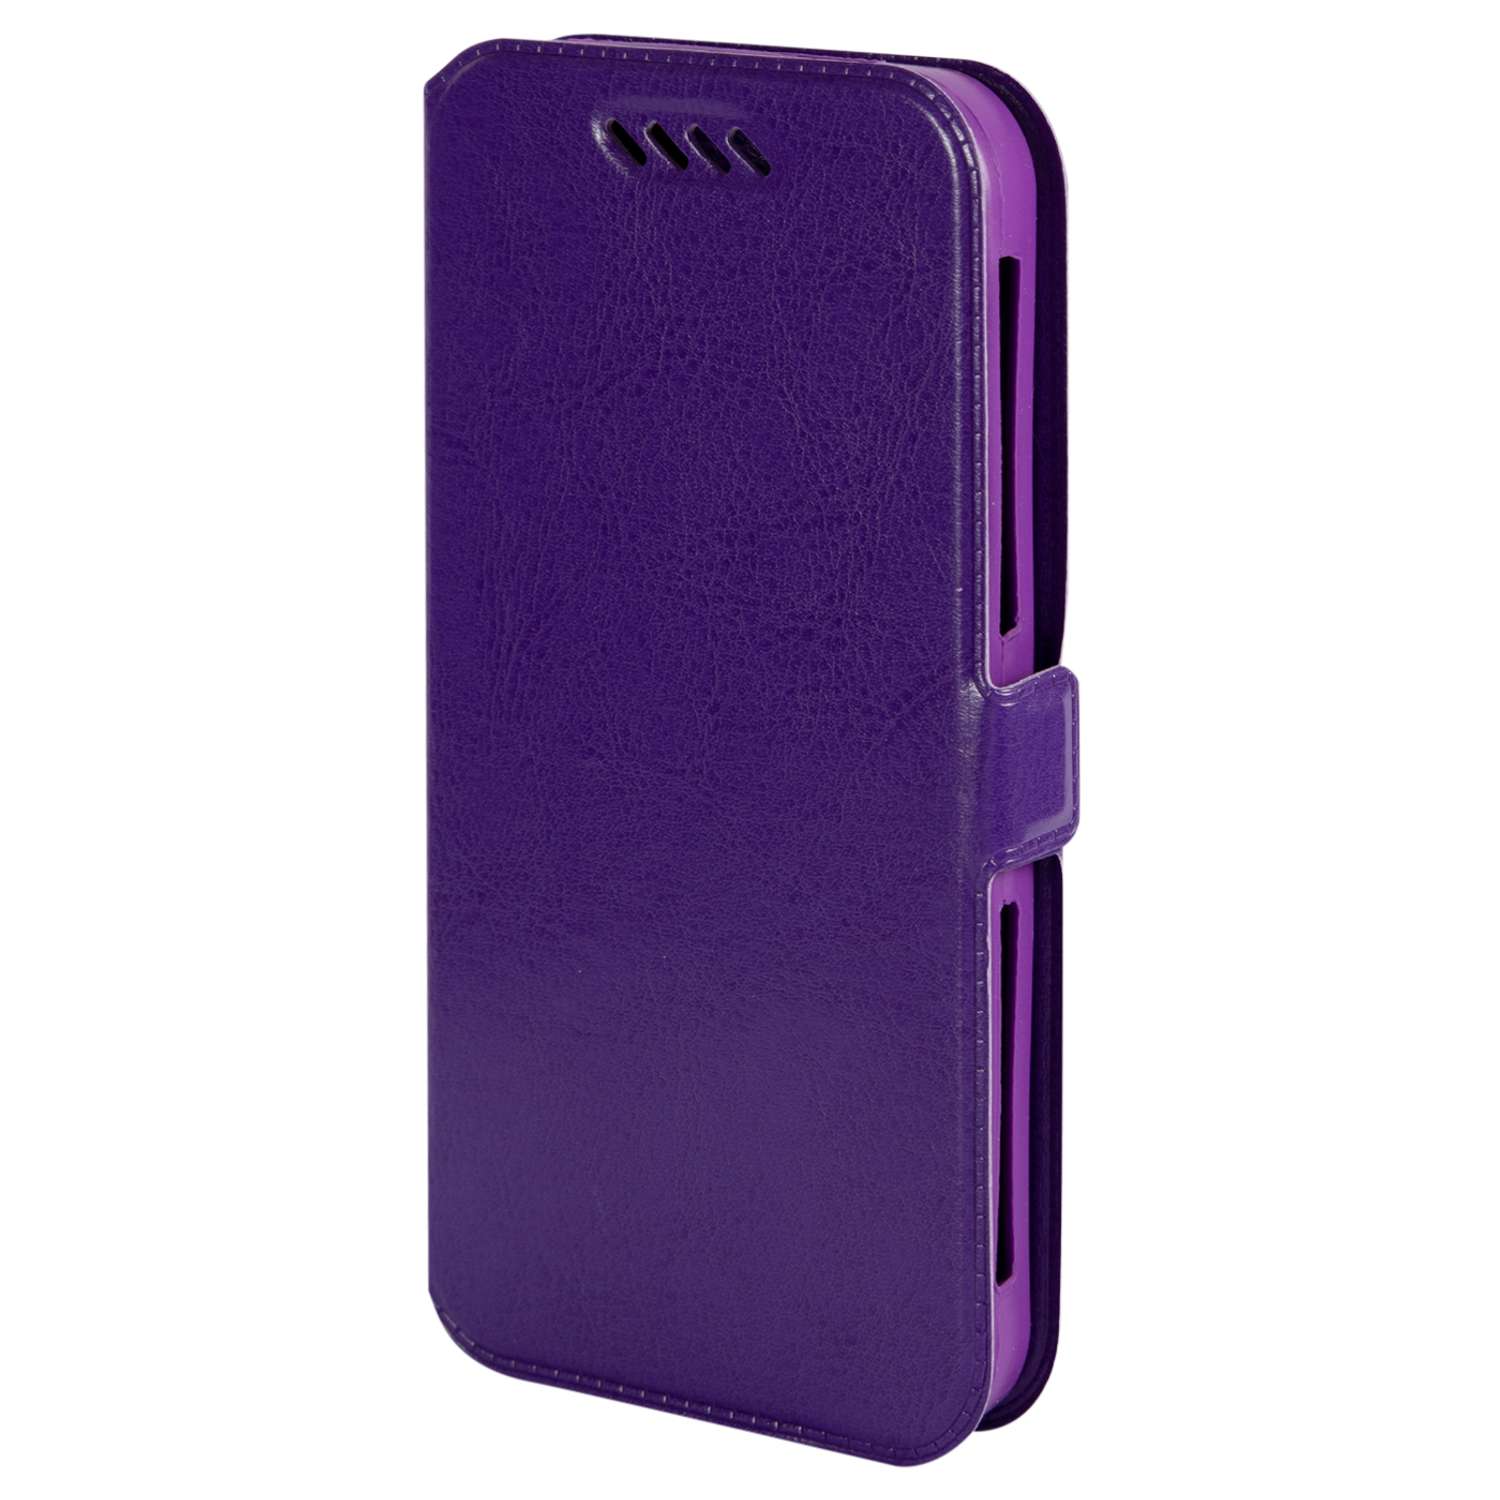 Чехол универсальный iBox Universal Slide для телефонов 4.2-5 дюймов фиолетовый - фото 1